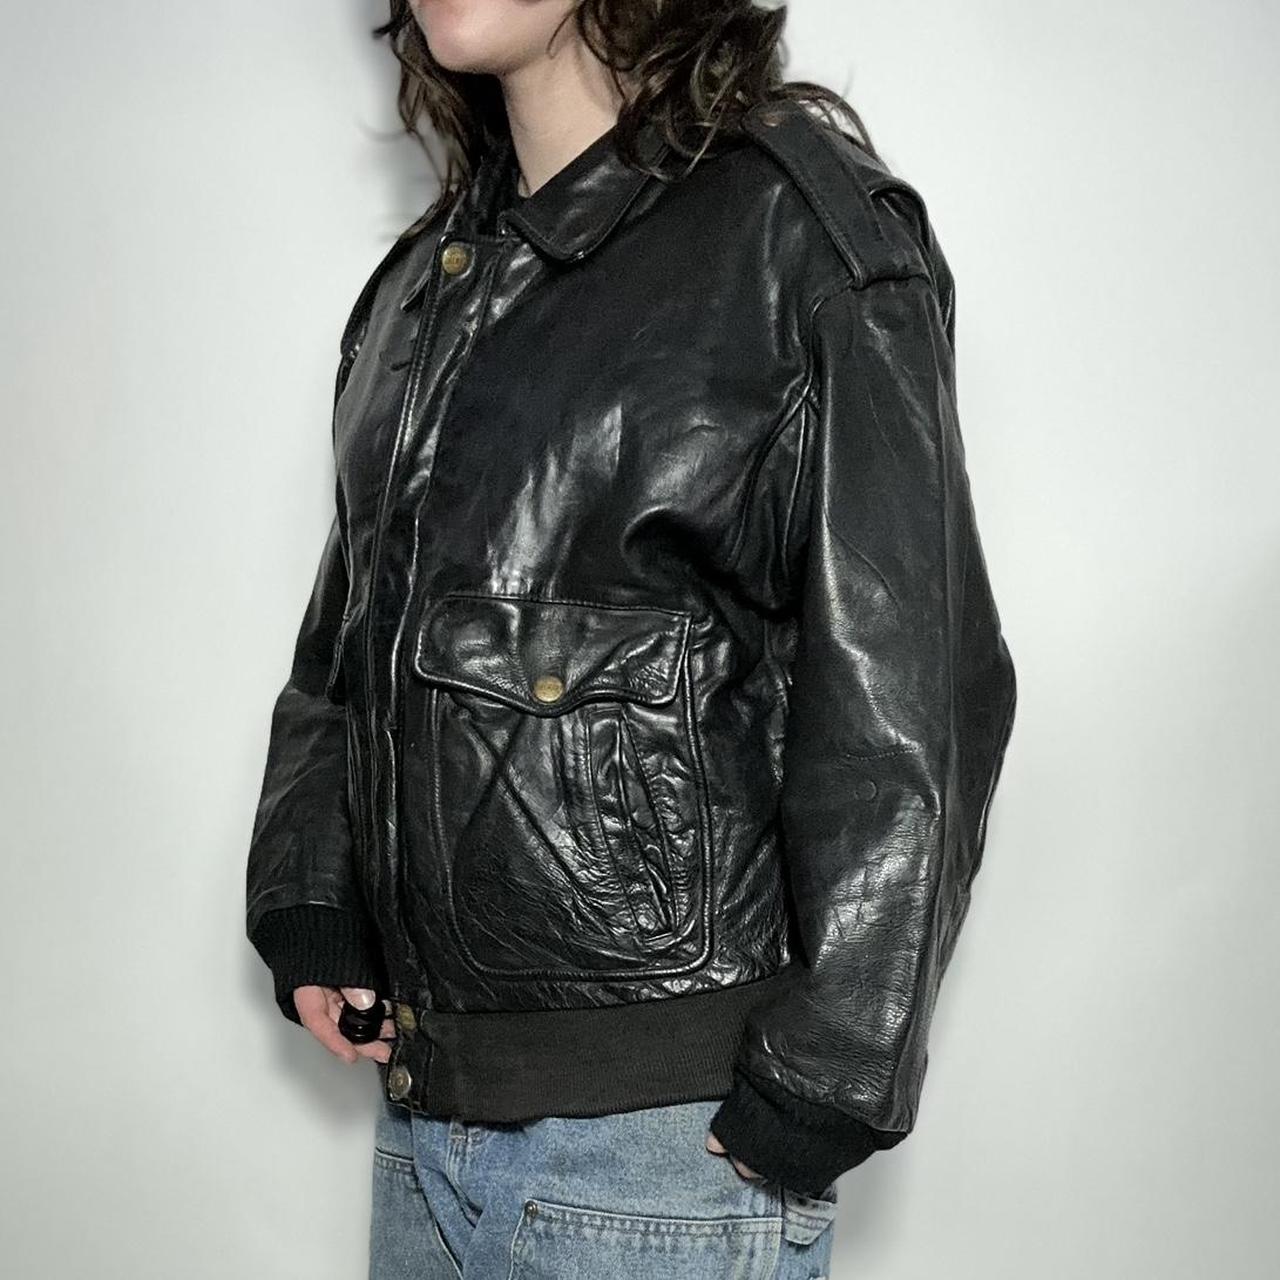 Vintage 90s black leather bomber jacket